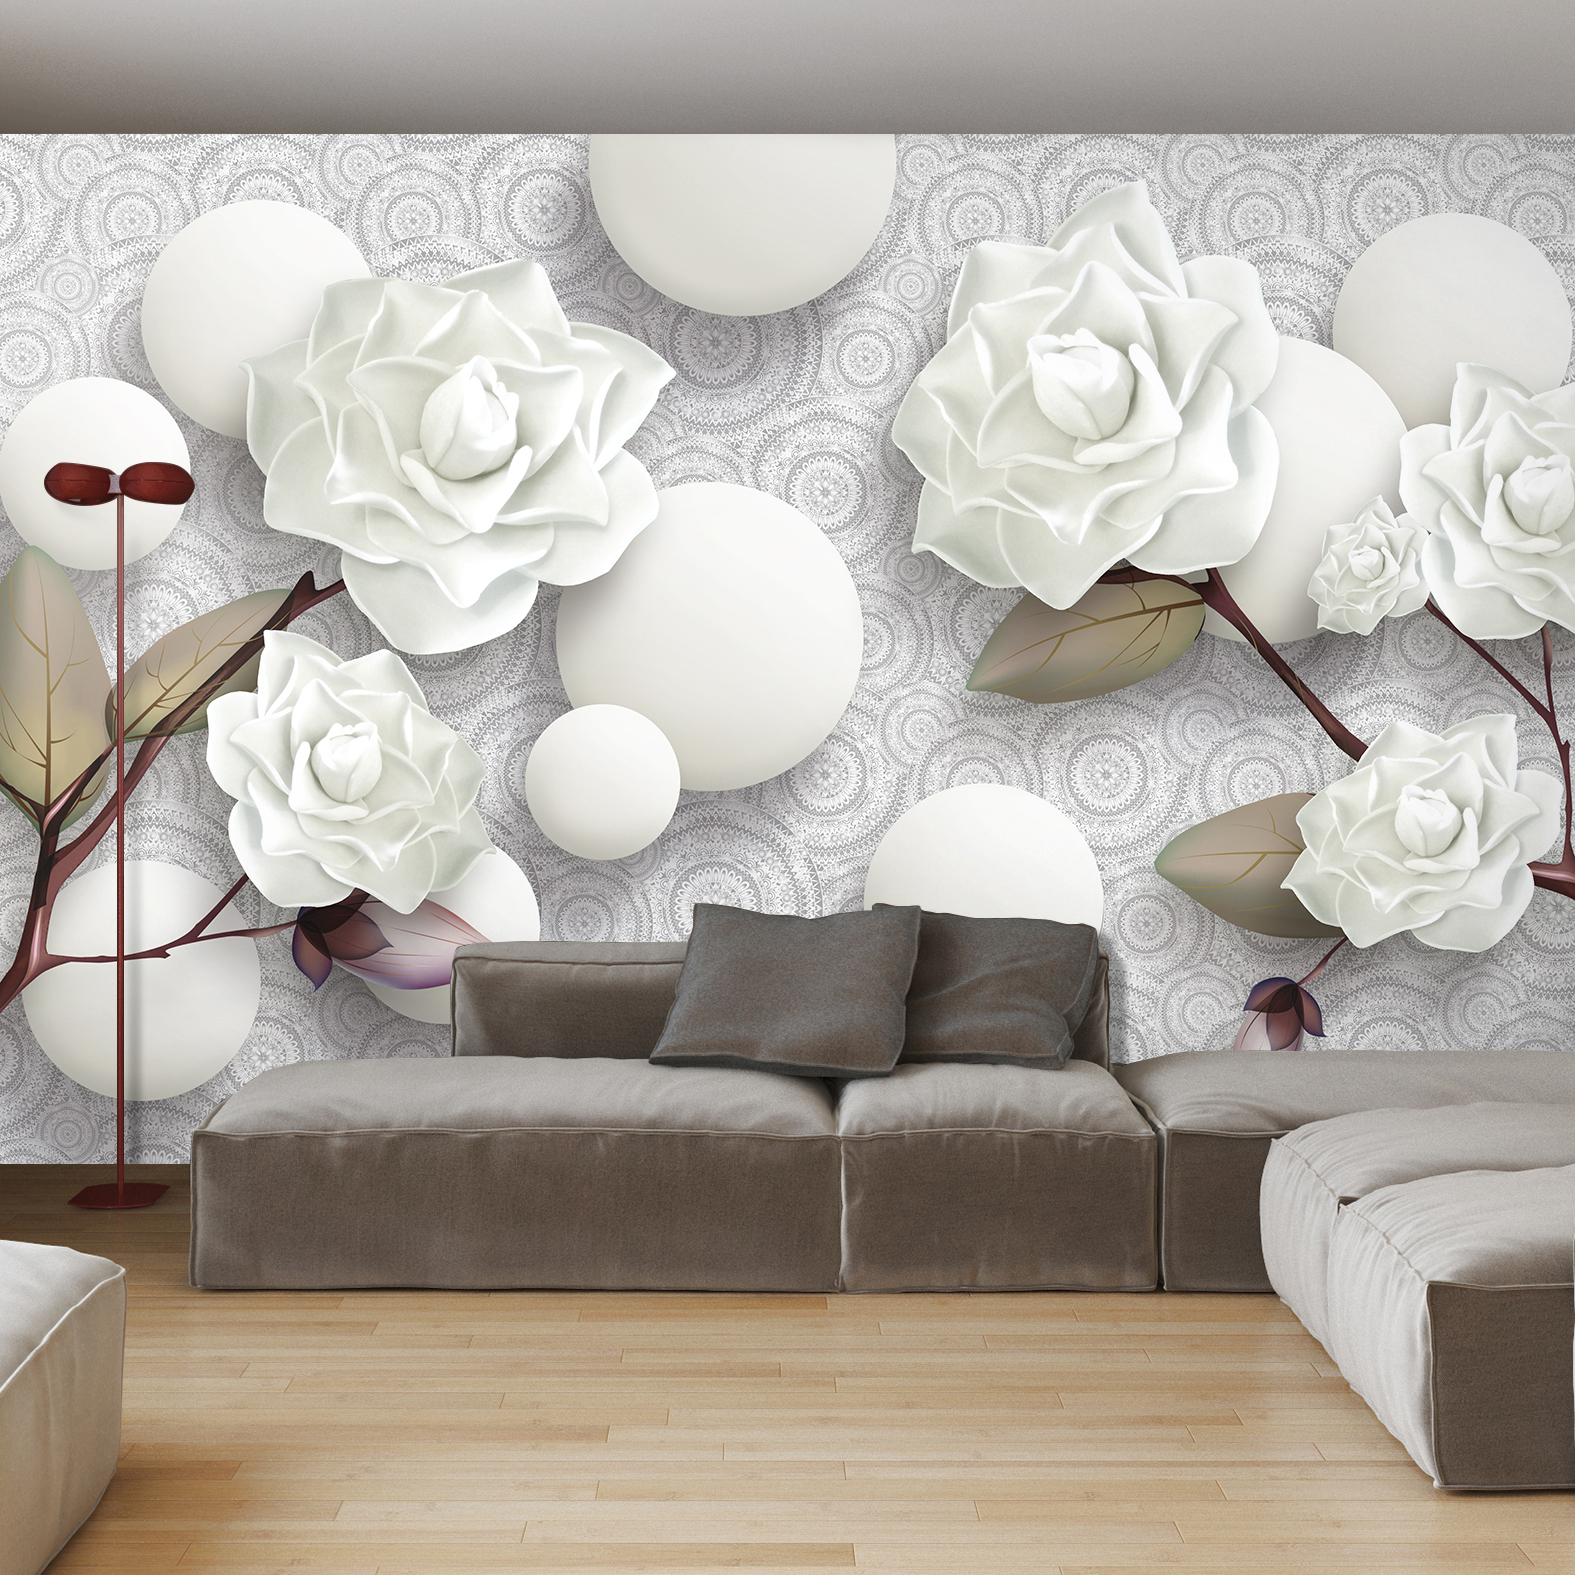 Фотообои Photostena 3D белые розы и шары 4,08 x 2,7 м